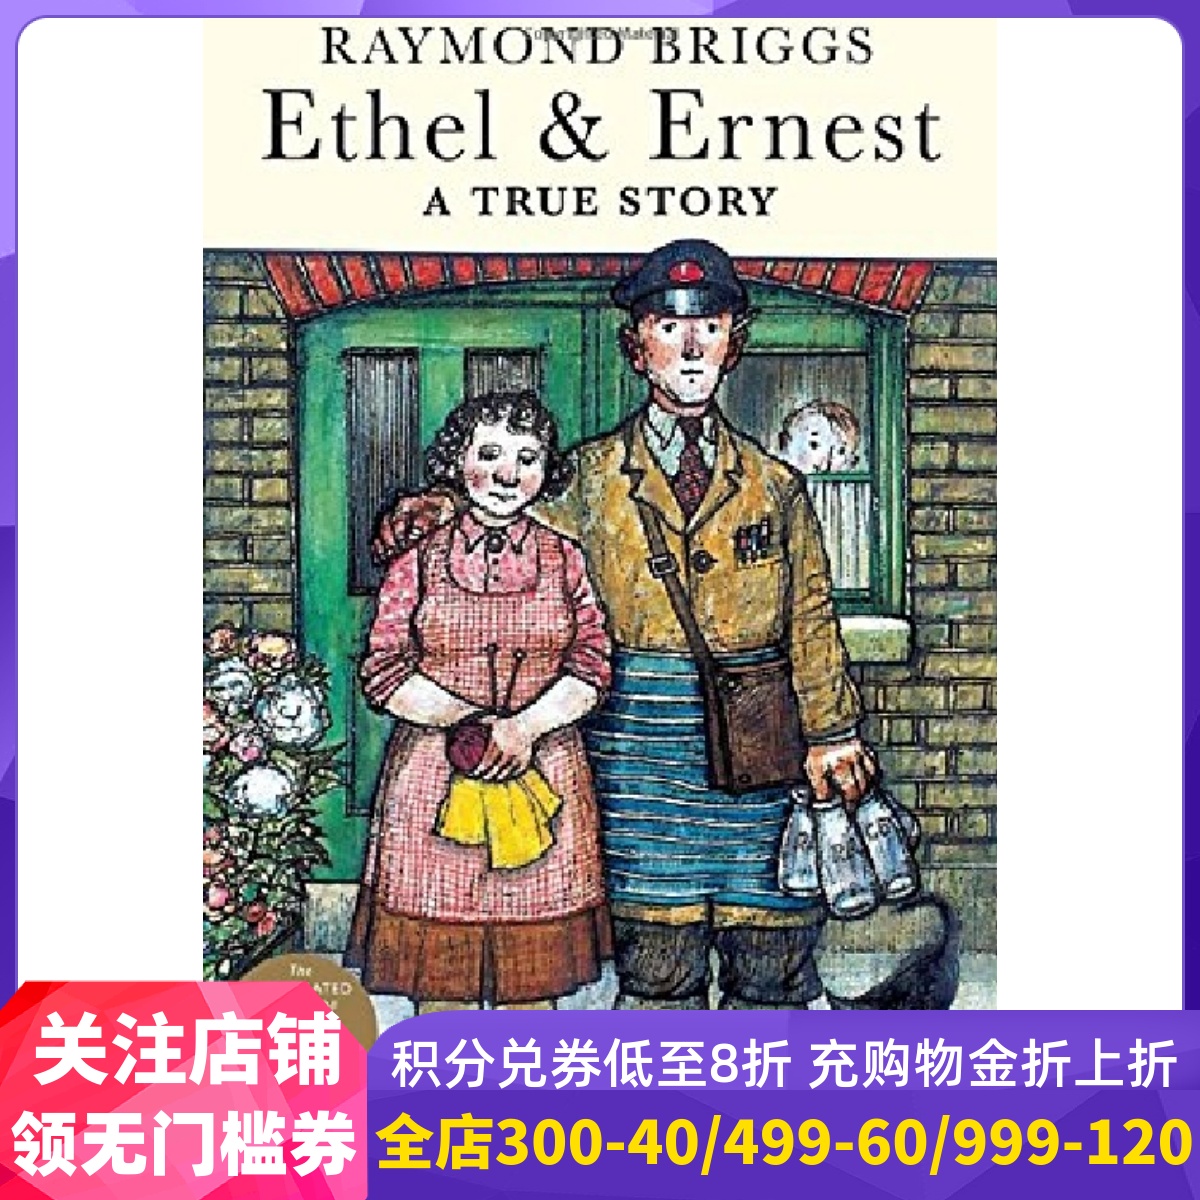 英文原版 Raymond Briggs: Ethel & Ernest 伦敦一家人 《雪人》作者雷蒙·布力格的温馨漫画